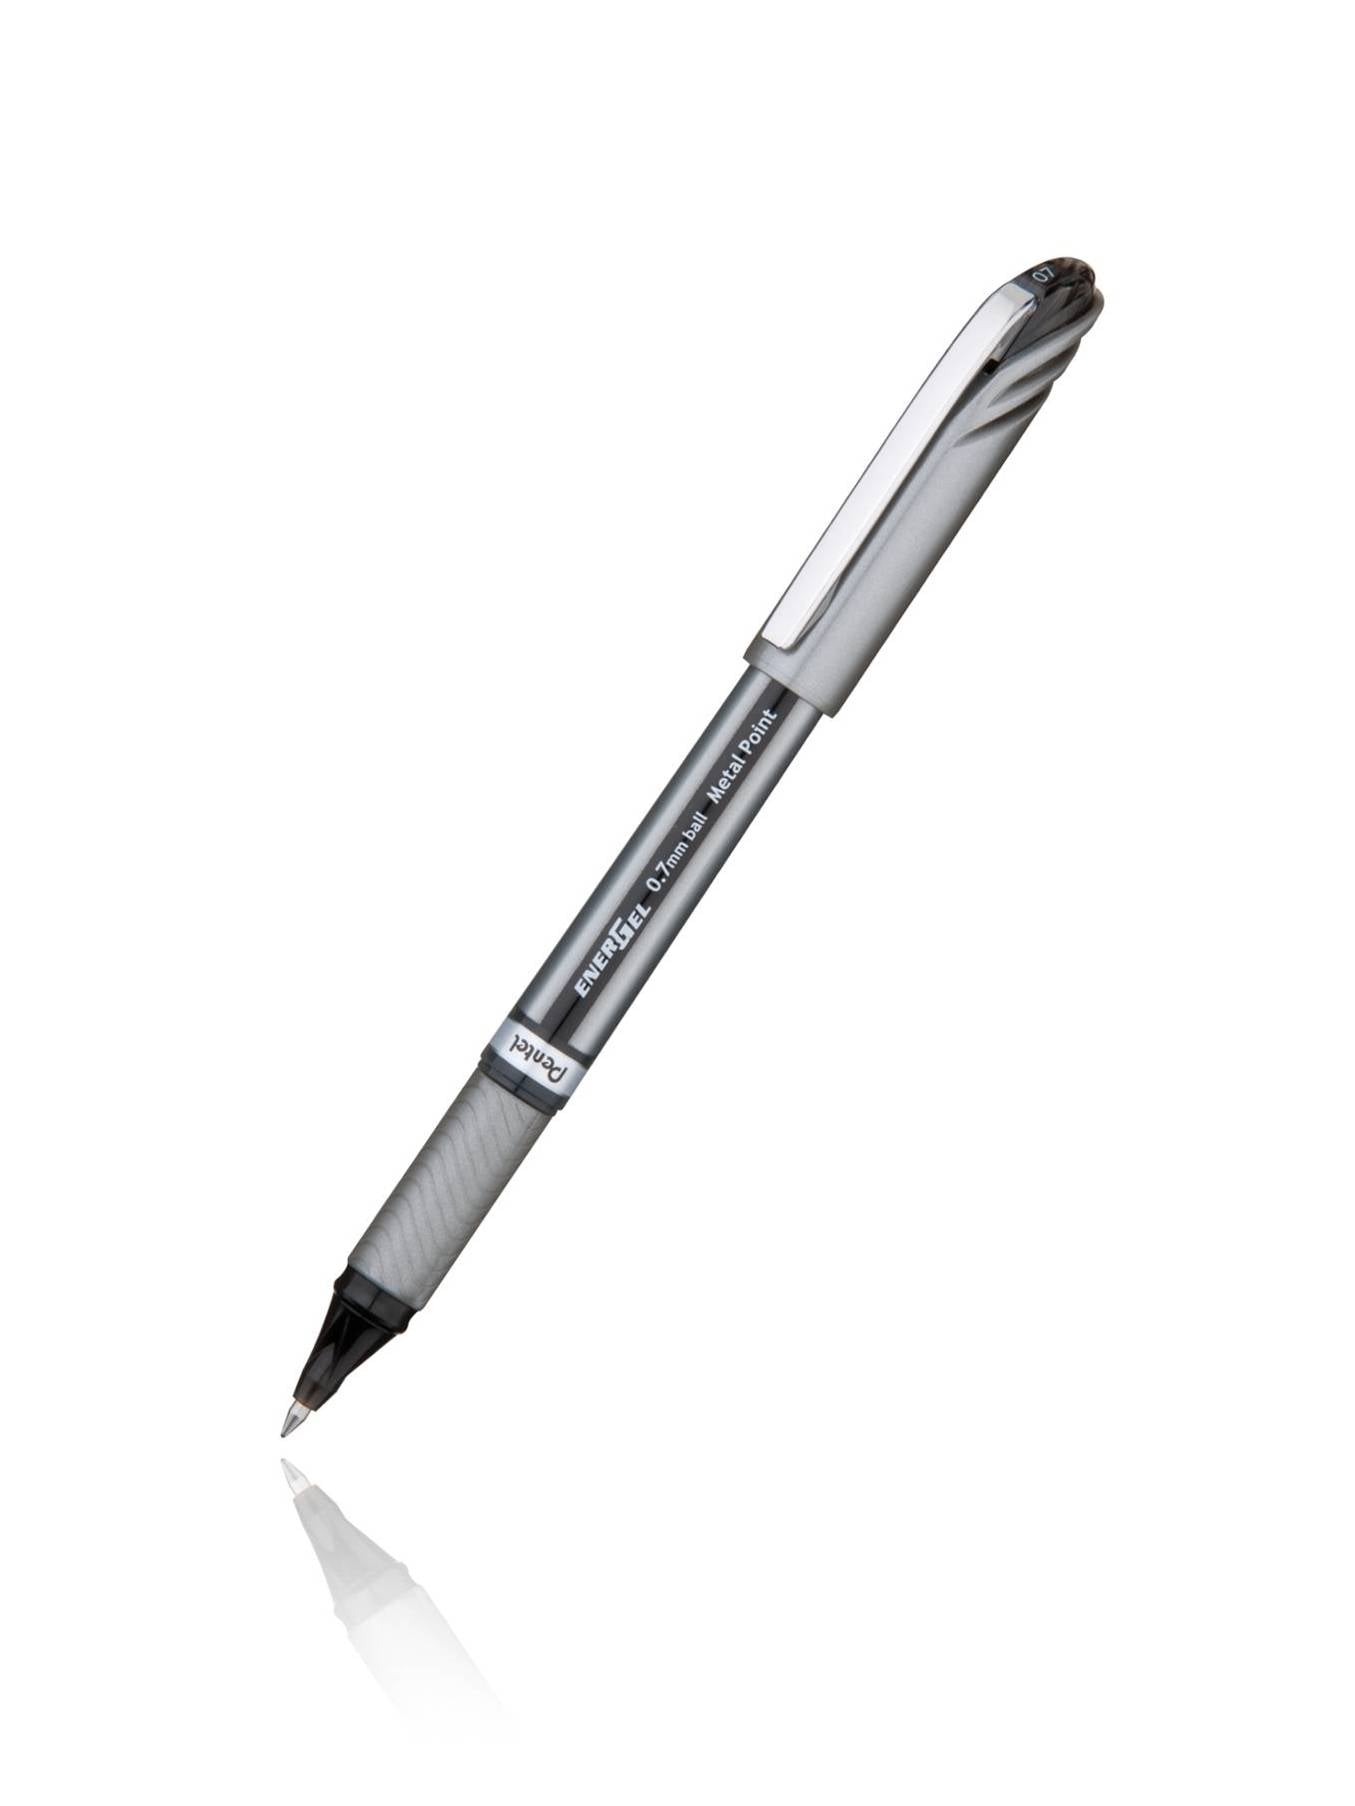 Pentel BL27-A, BL27-B, BL27-C, BL27-D, BL27-V EnerGel NV Liquid Gel Pens, 0.7mm, Metal Tip, Medium Line Capped